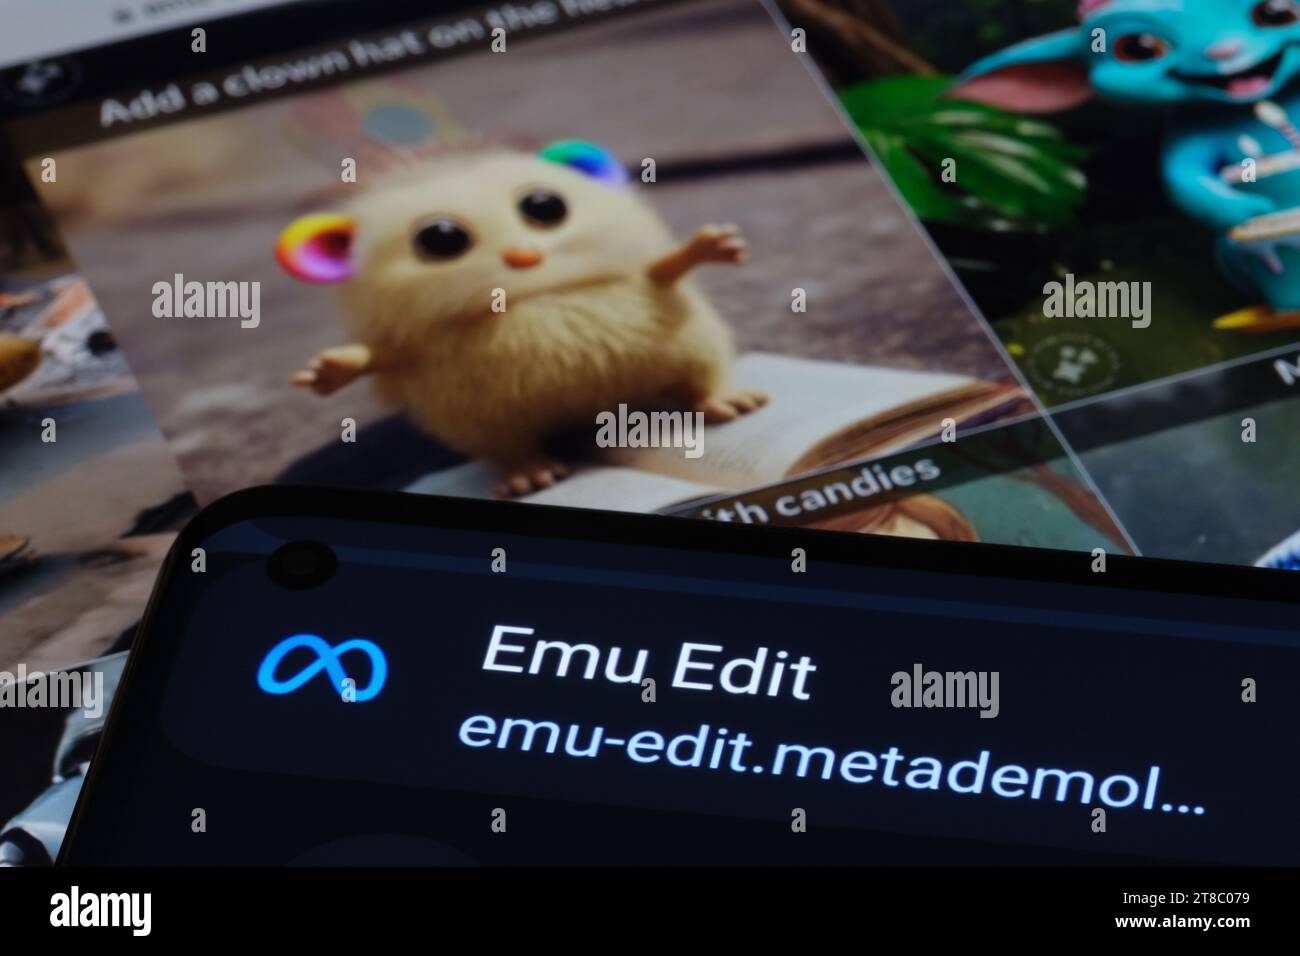 Logo de l'outil EMU Edit et EMU Video vu sur smartphone et ses exemples en arrière-plan. Nouvel outil de génération et d'édition d'images et de vidéos ai de Meta. Banque D'Images